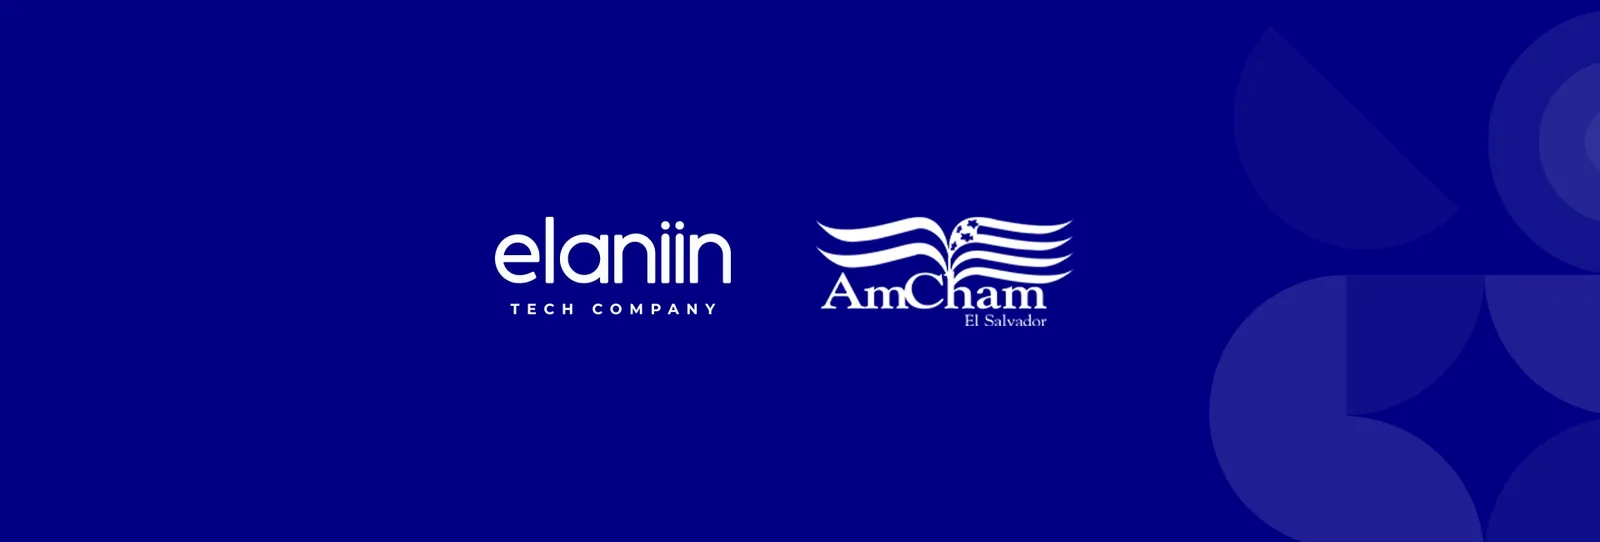 Elaniin has become a member of AmCham El Salvador.